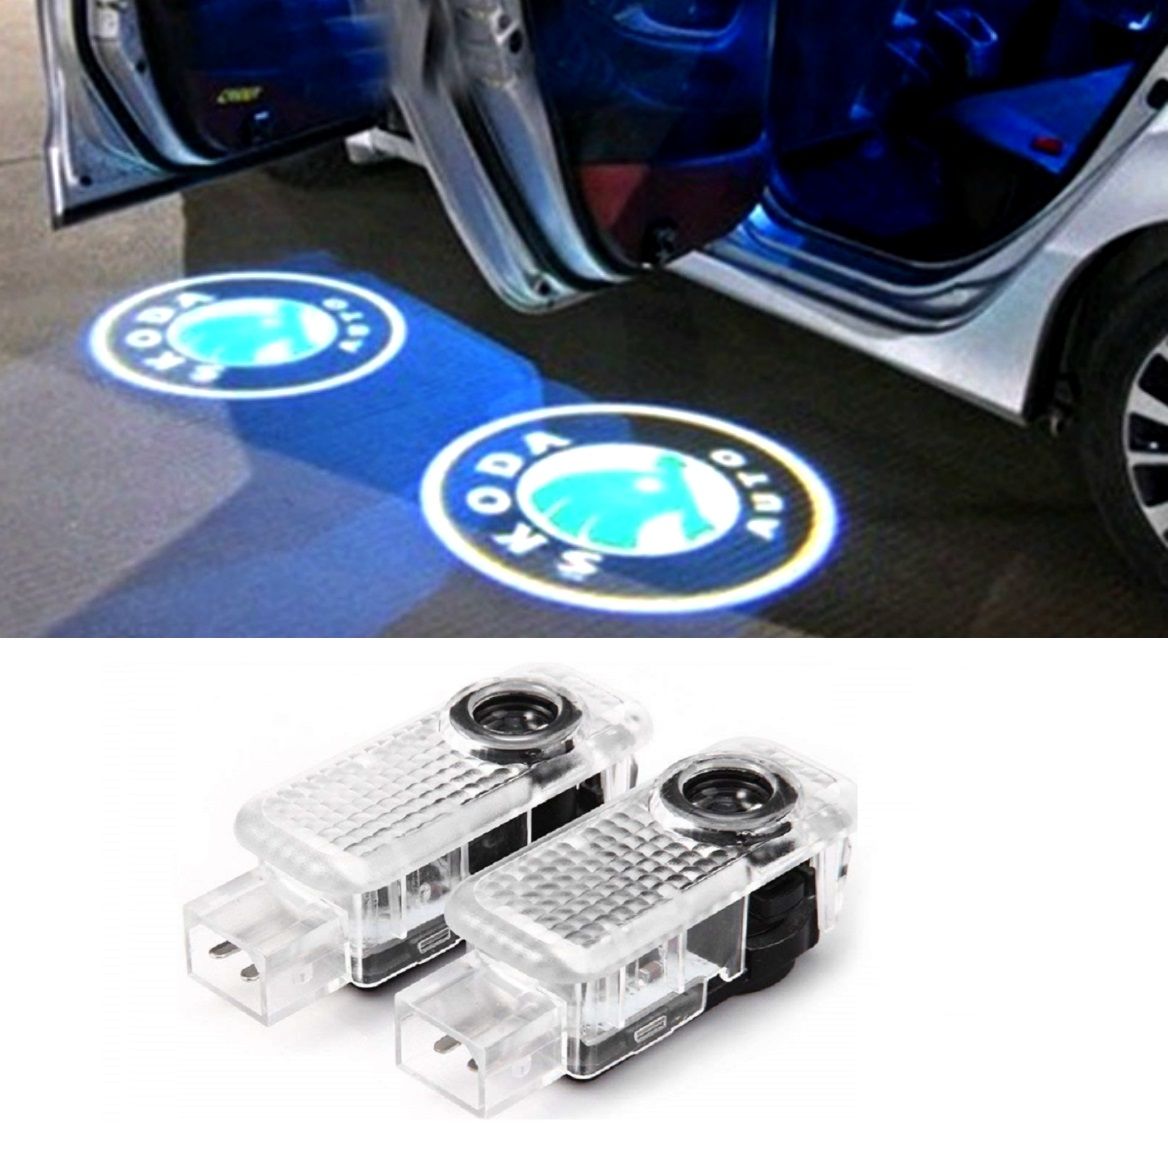 Einstiegsbeleuchtung/Umfeldbeleuchtung mit BMW Logo